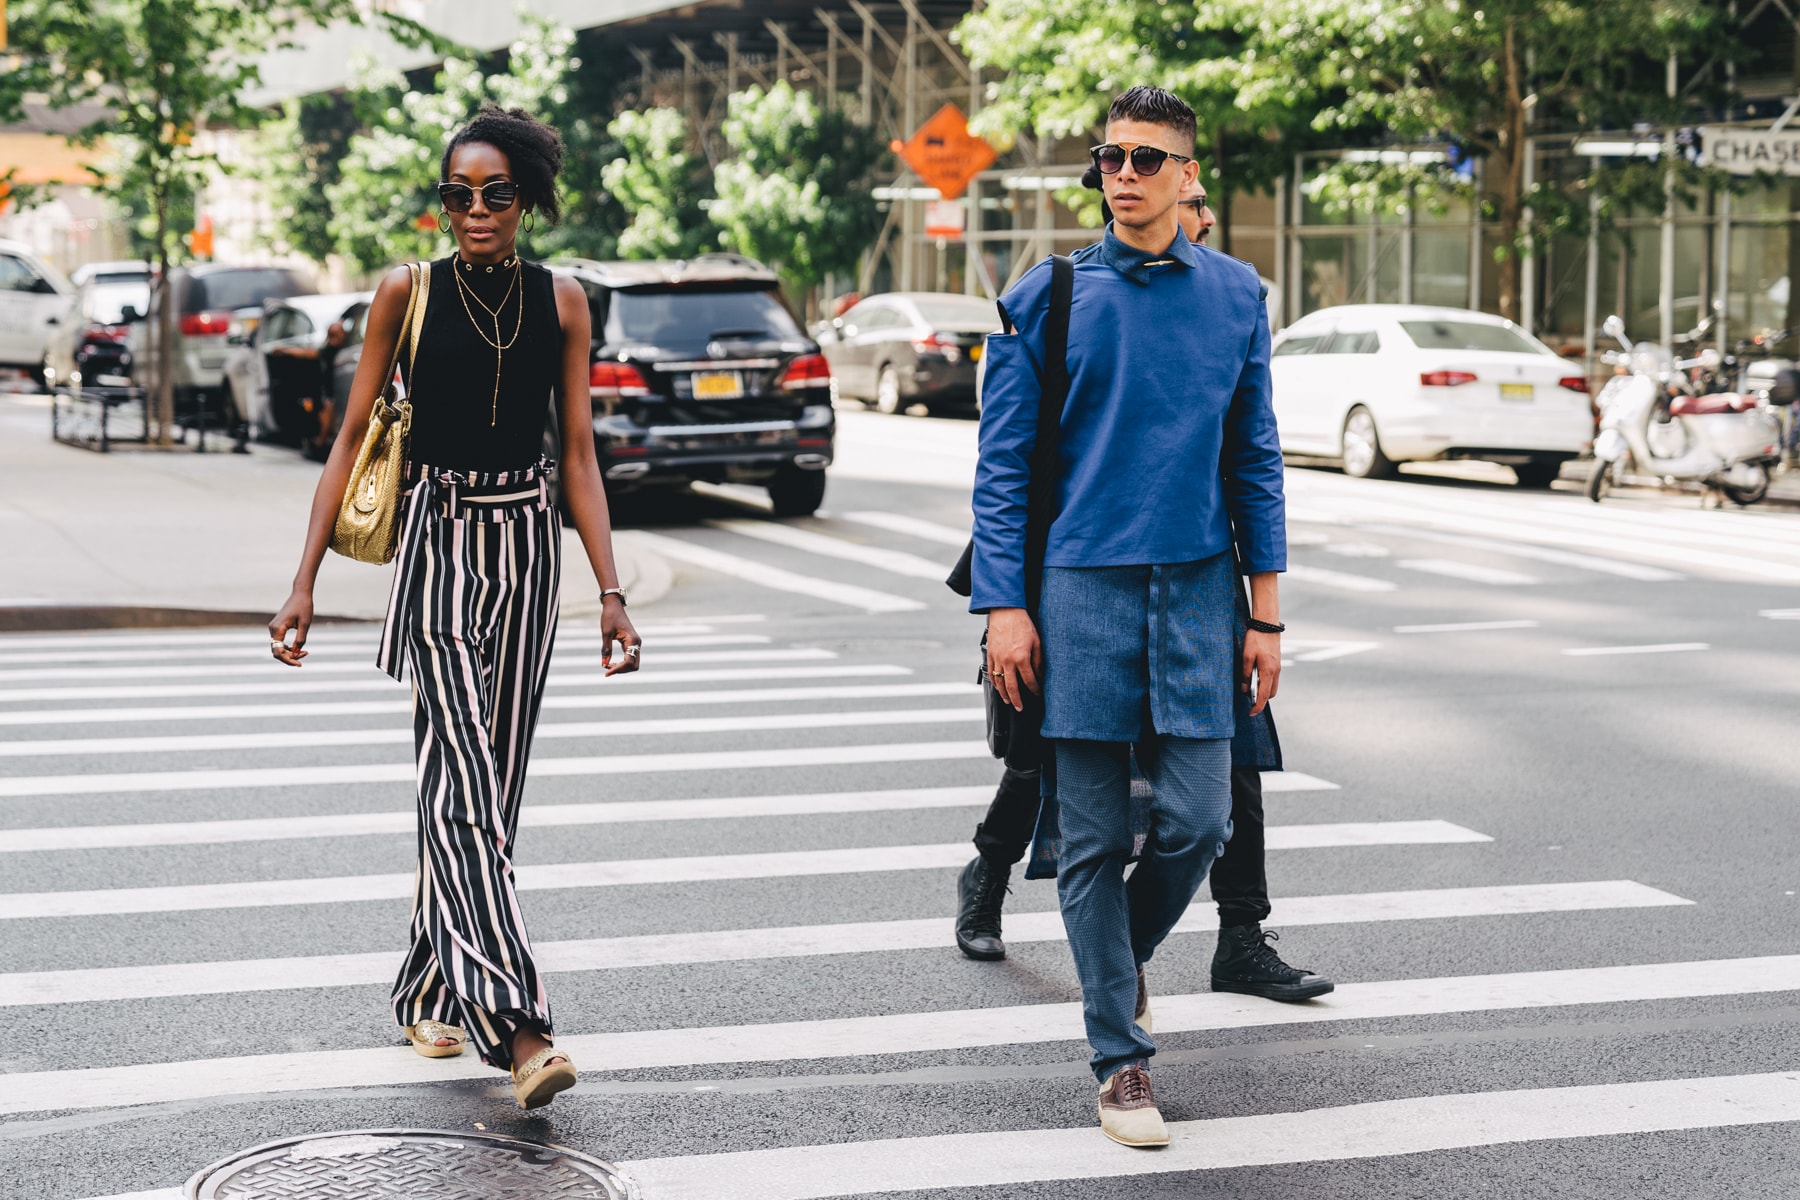 2019 봄, 여름 뉴욕 남성 패션위크 컬렉션 탑 5 스트릿 스타일